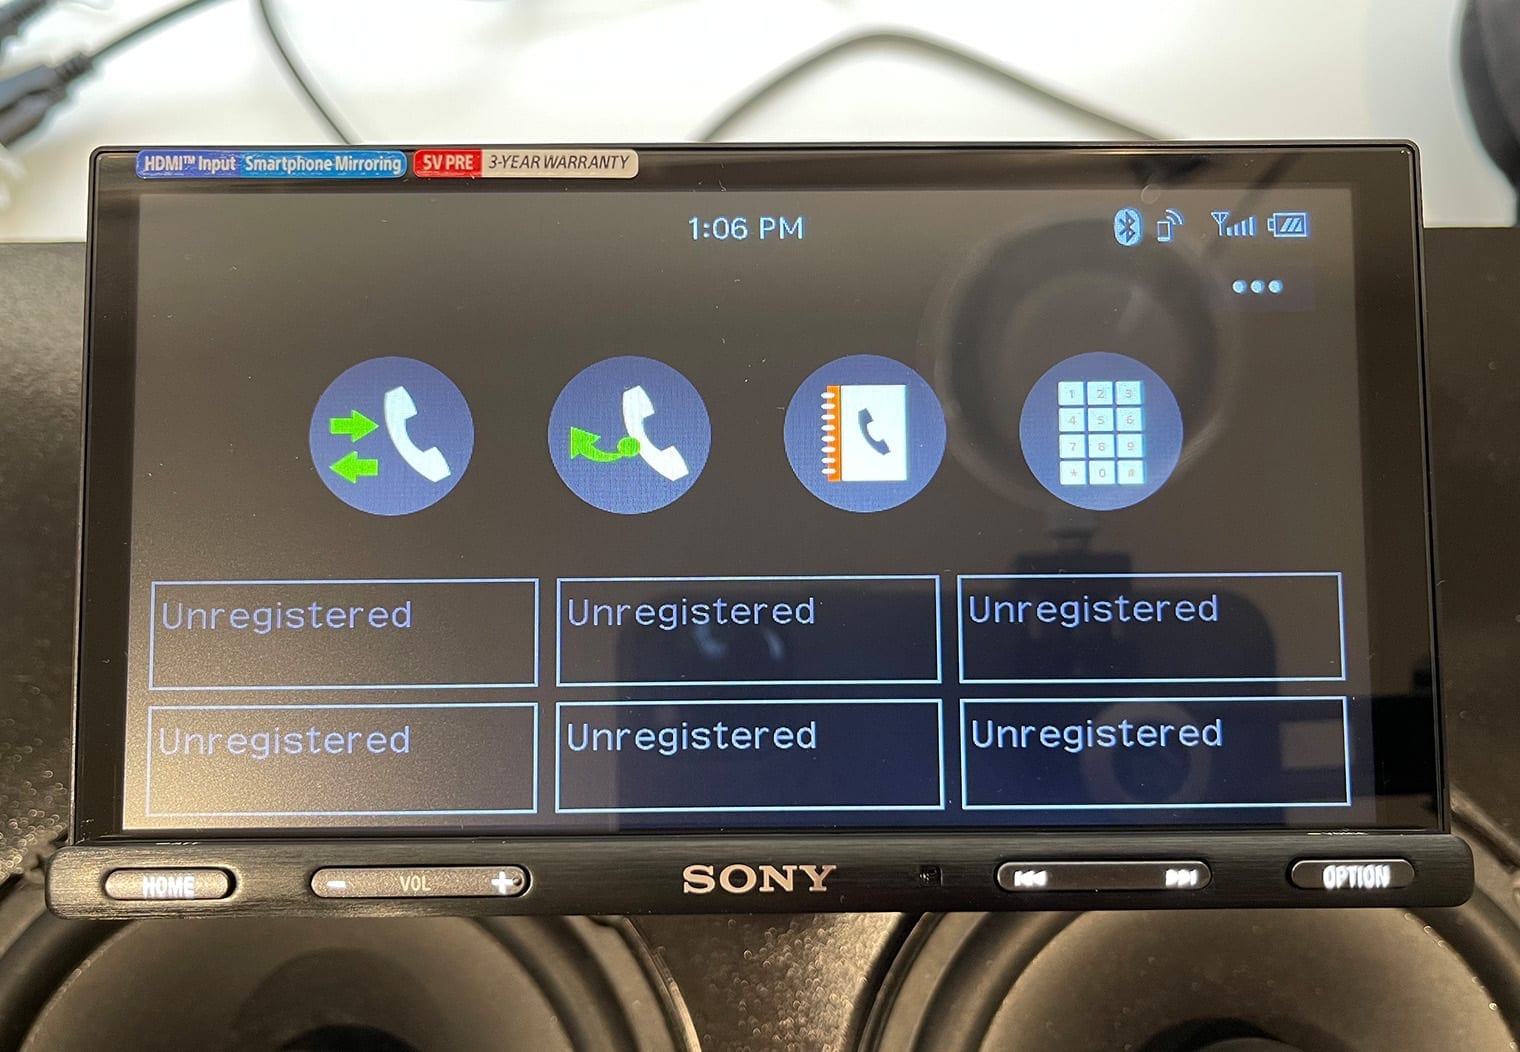 Sony XAV-AX5600 phone screen